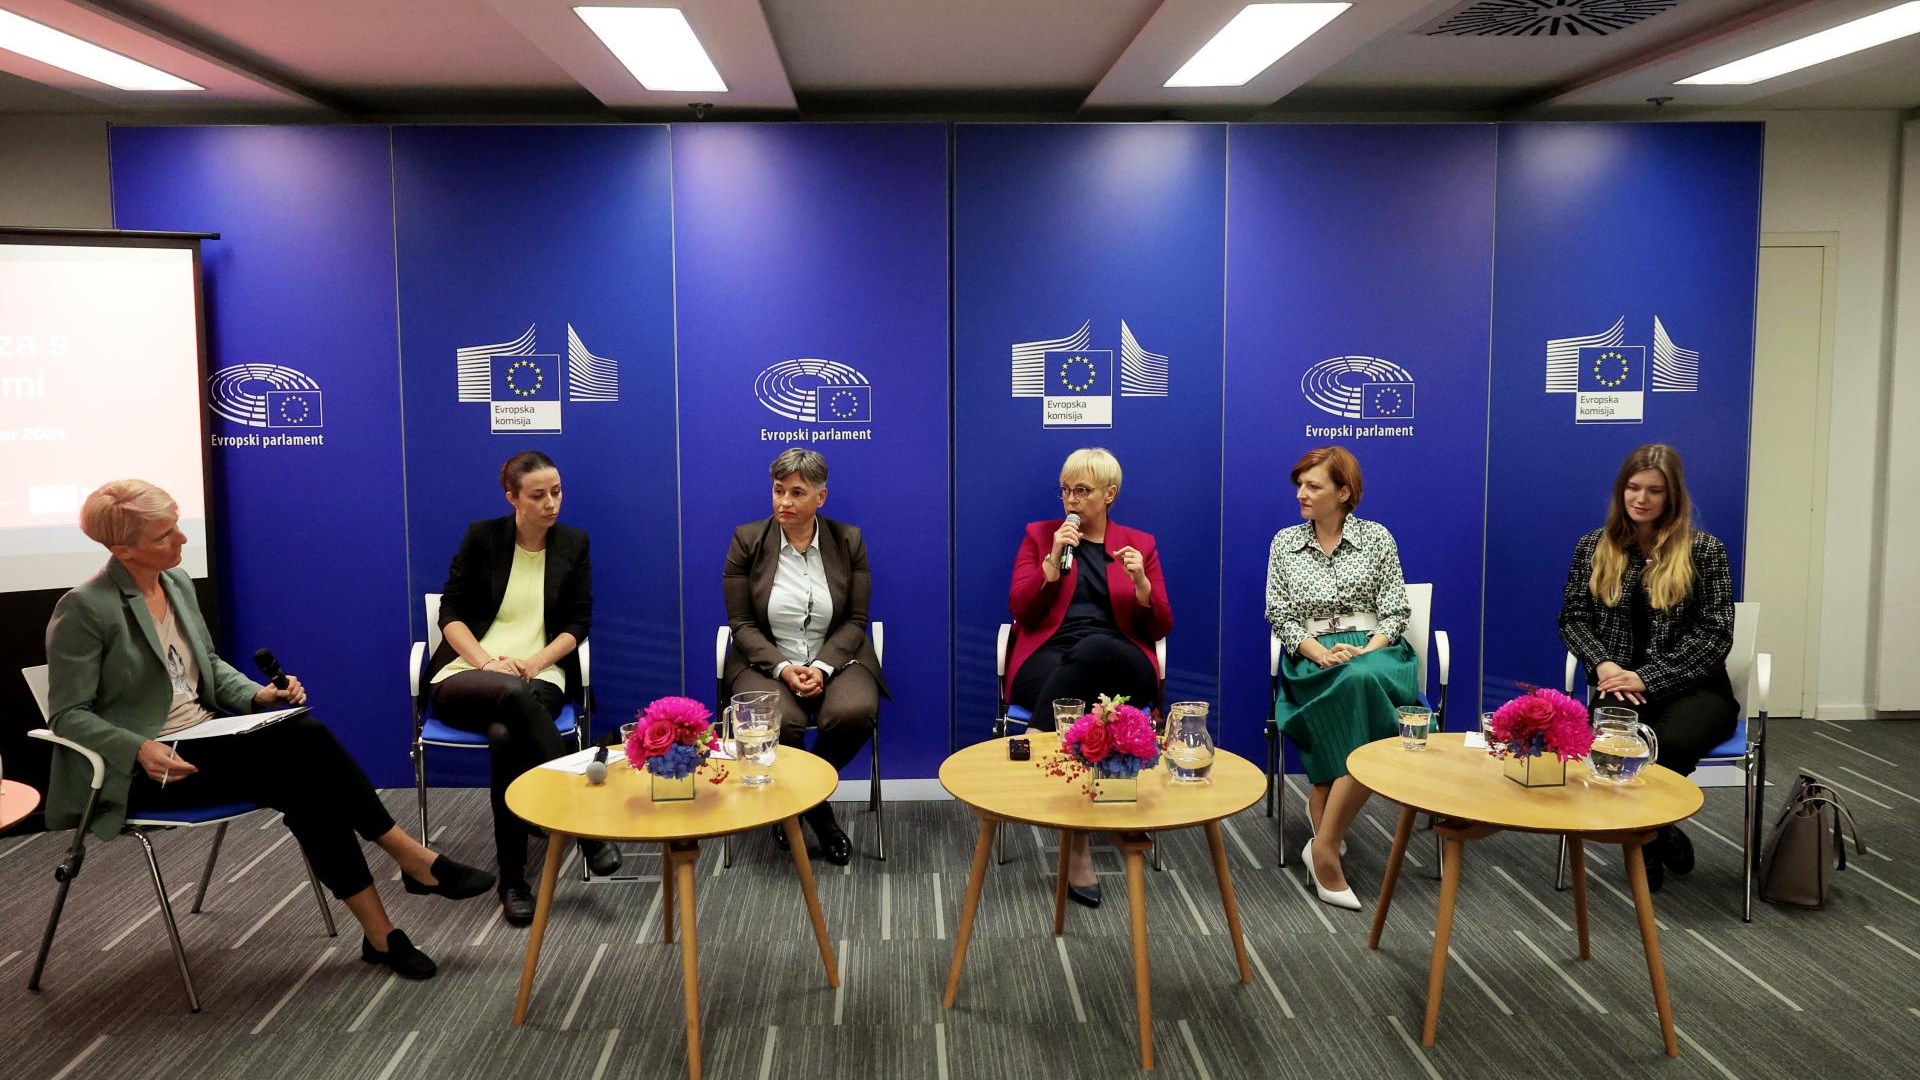 Les femmes politiques slovènes ont averti lors de la table ronde que la politique n’est pas seulement un monde d’hommes